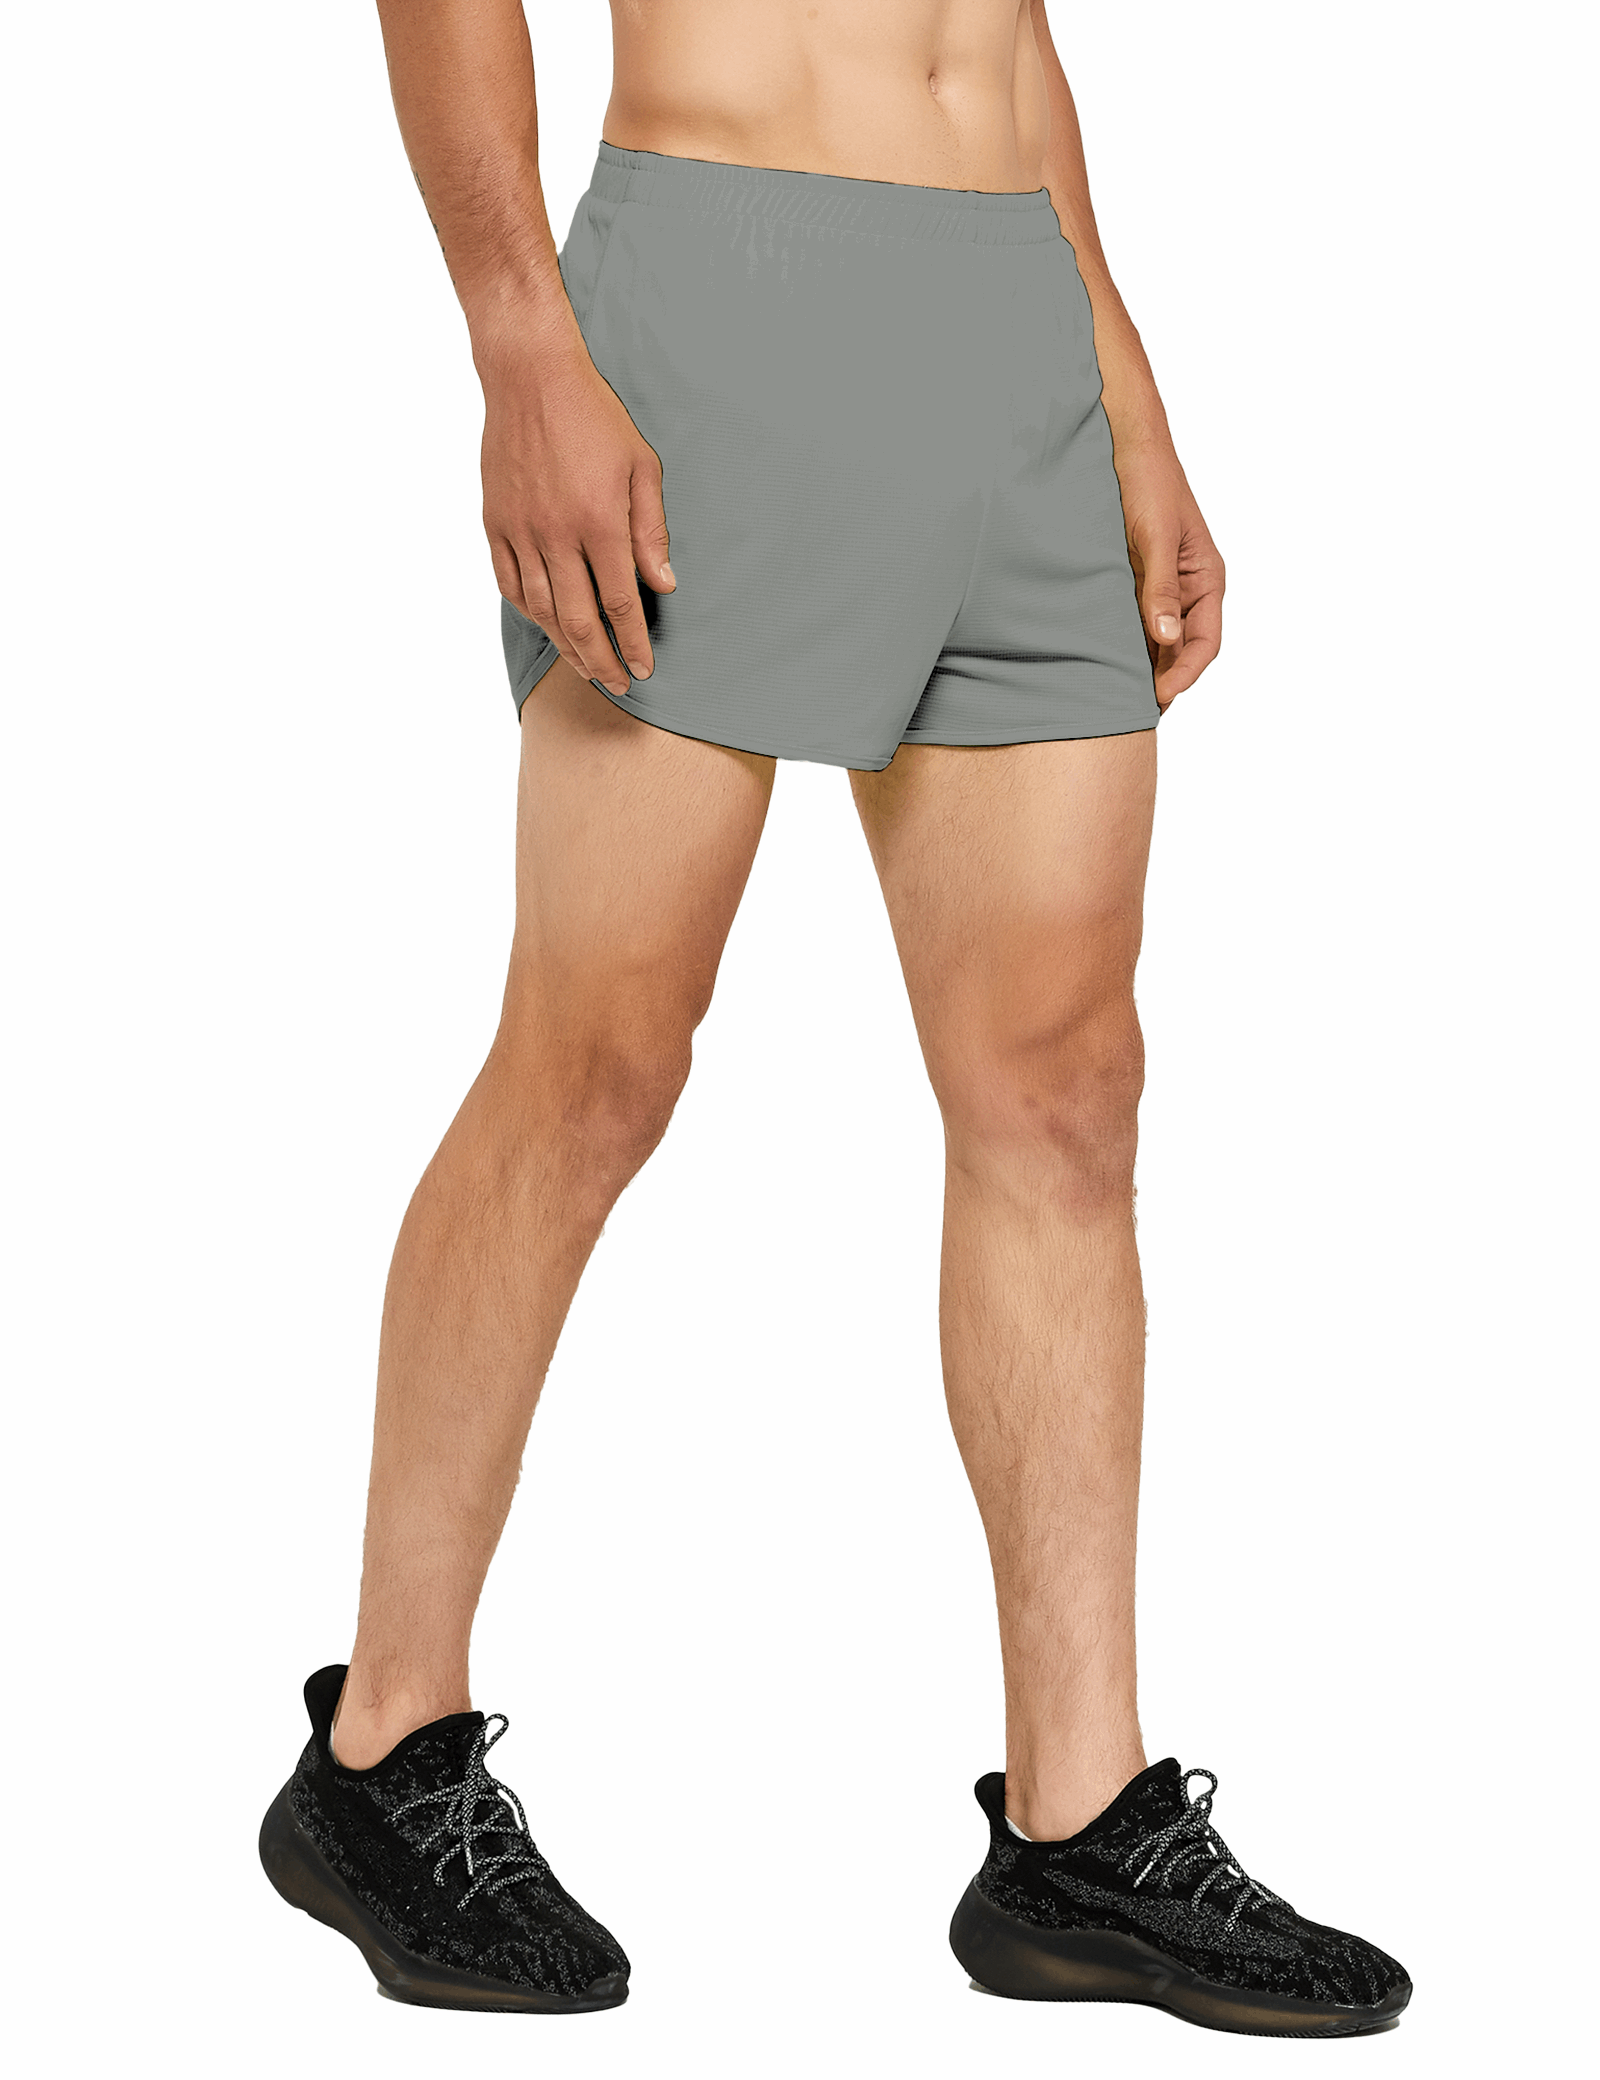 mens 3 inch light grey running shorts